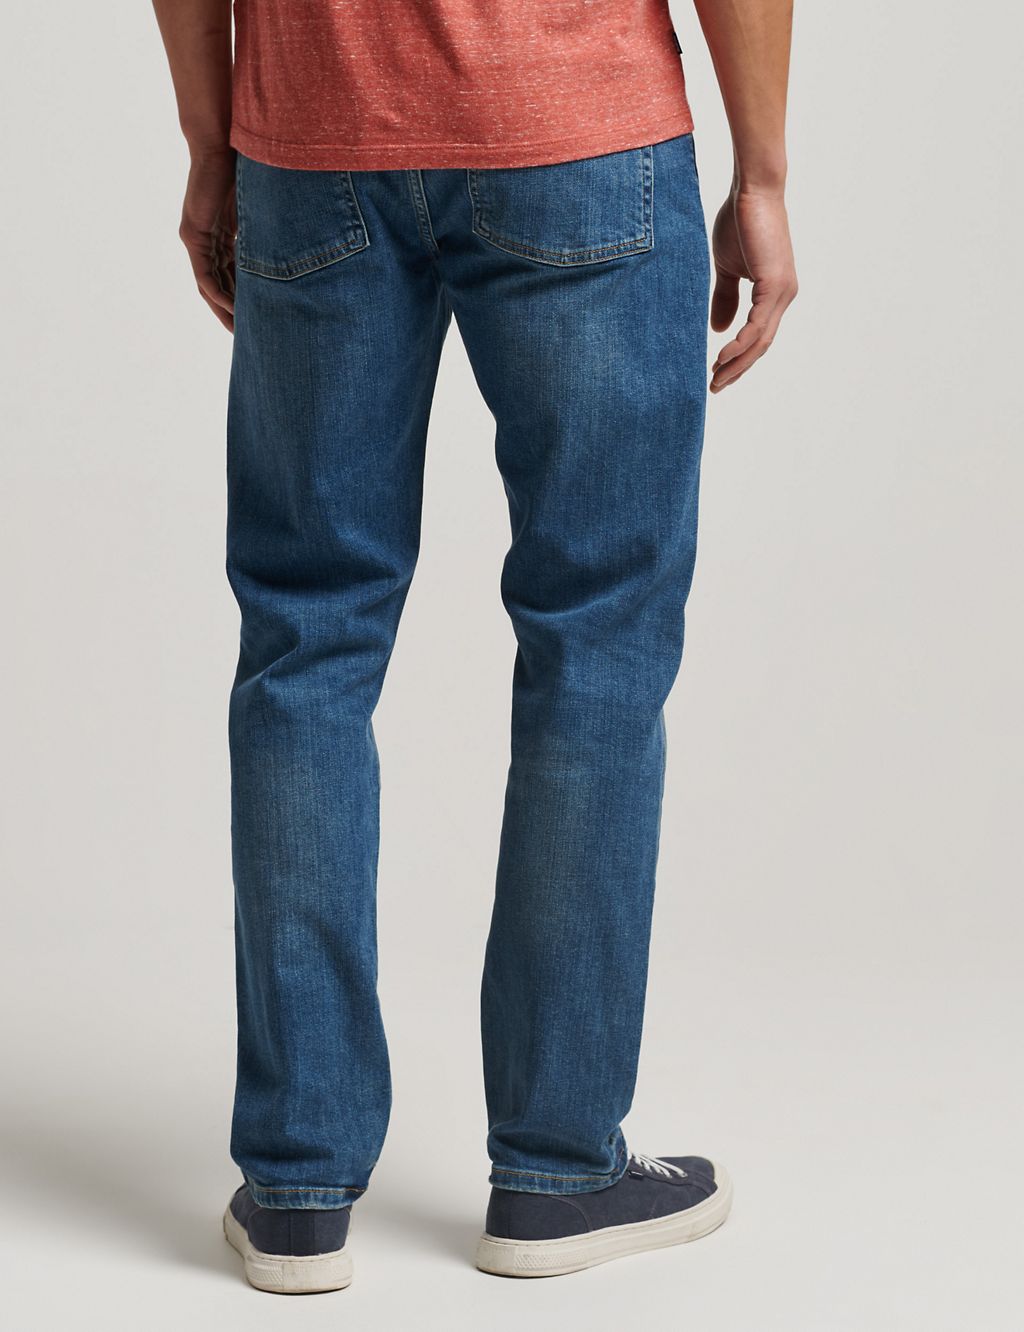 Slim Fit 5 Pocket Jeans 4 of 6